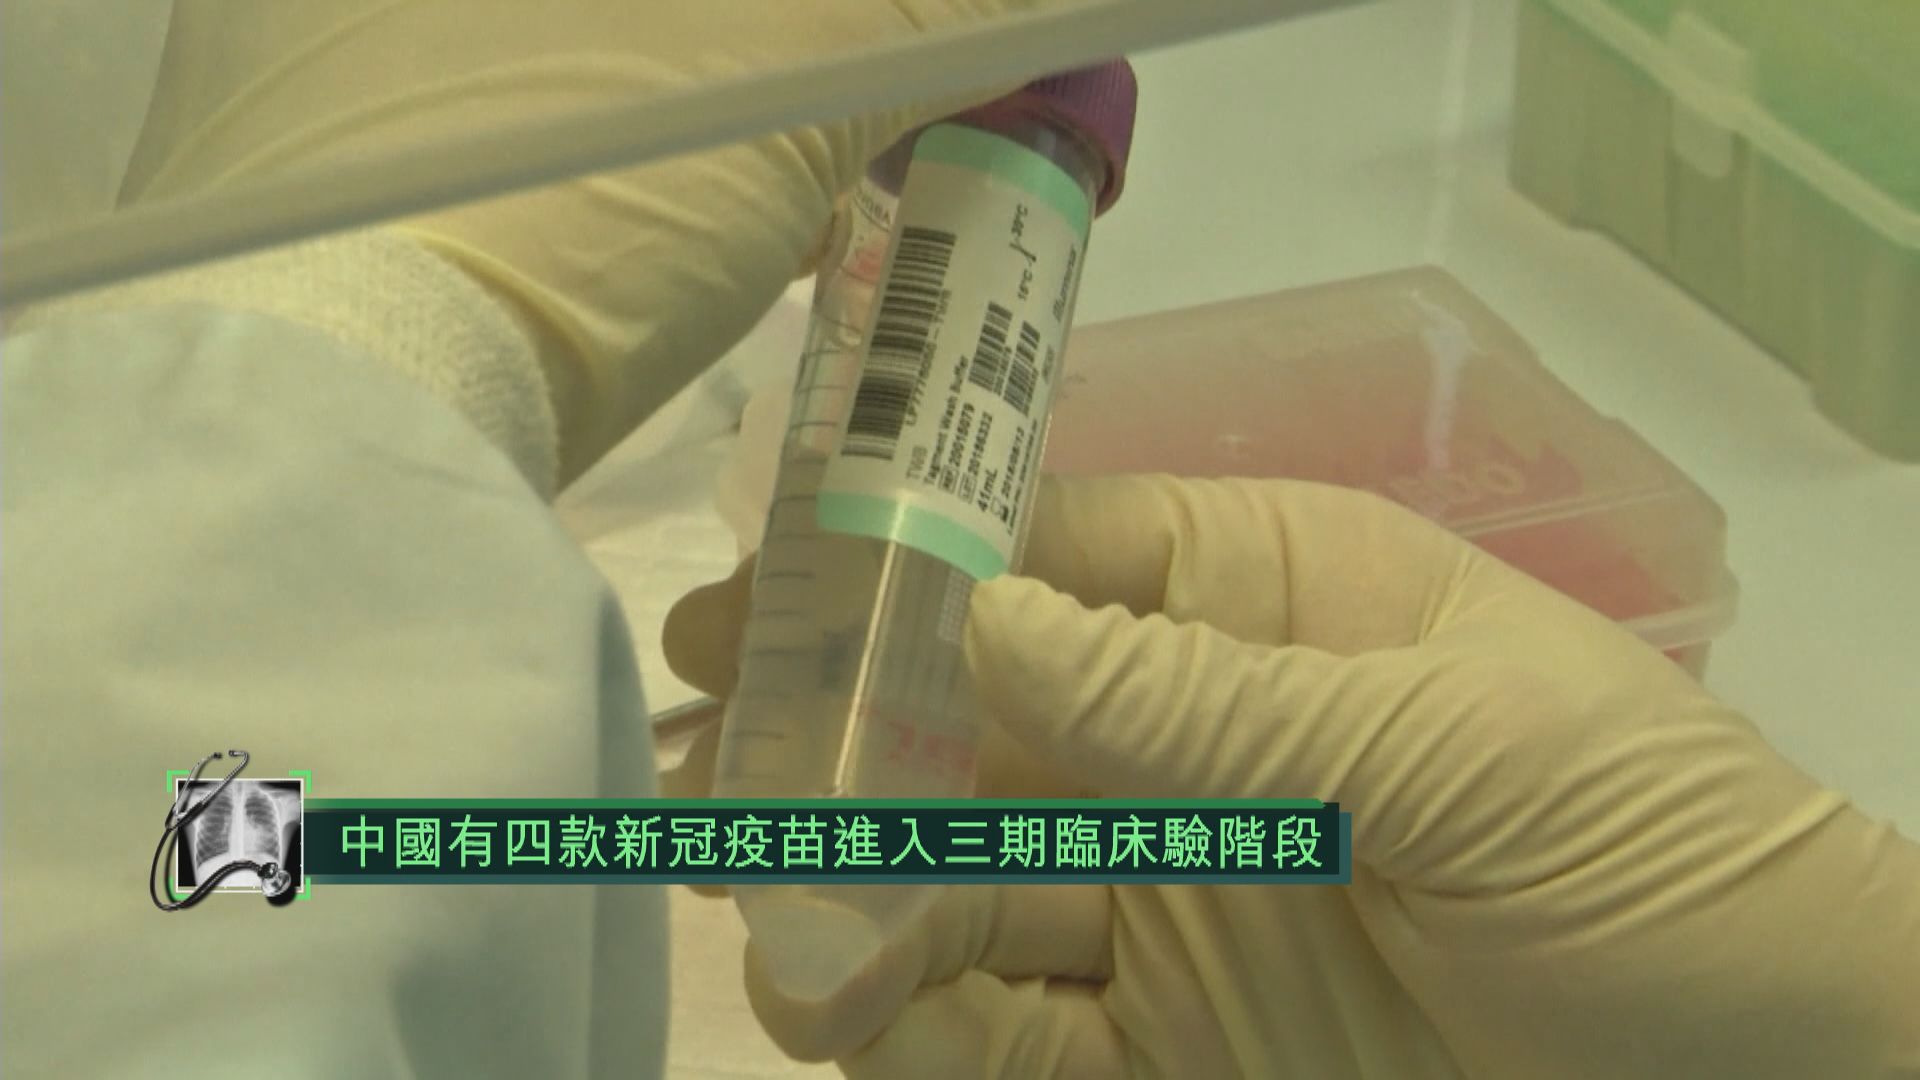 中國有四款新冠疫苗進入三期臨床試驗階段